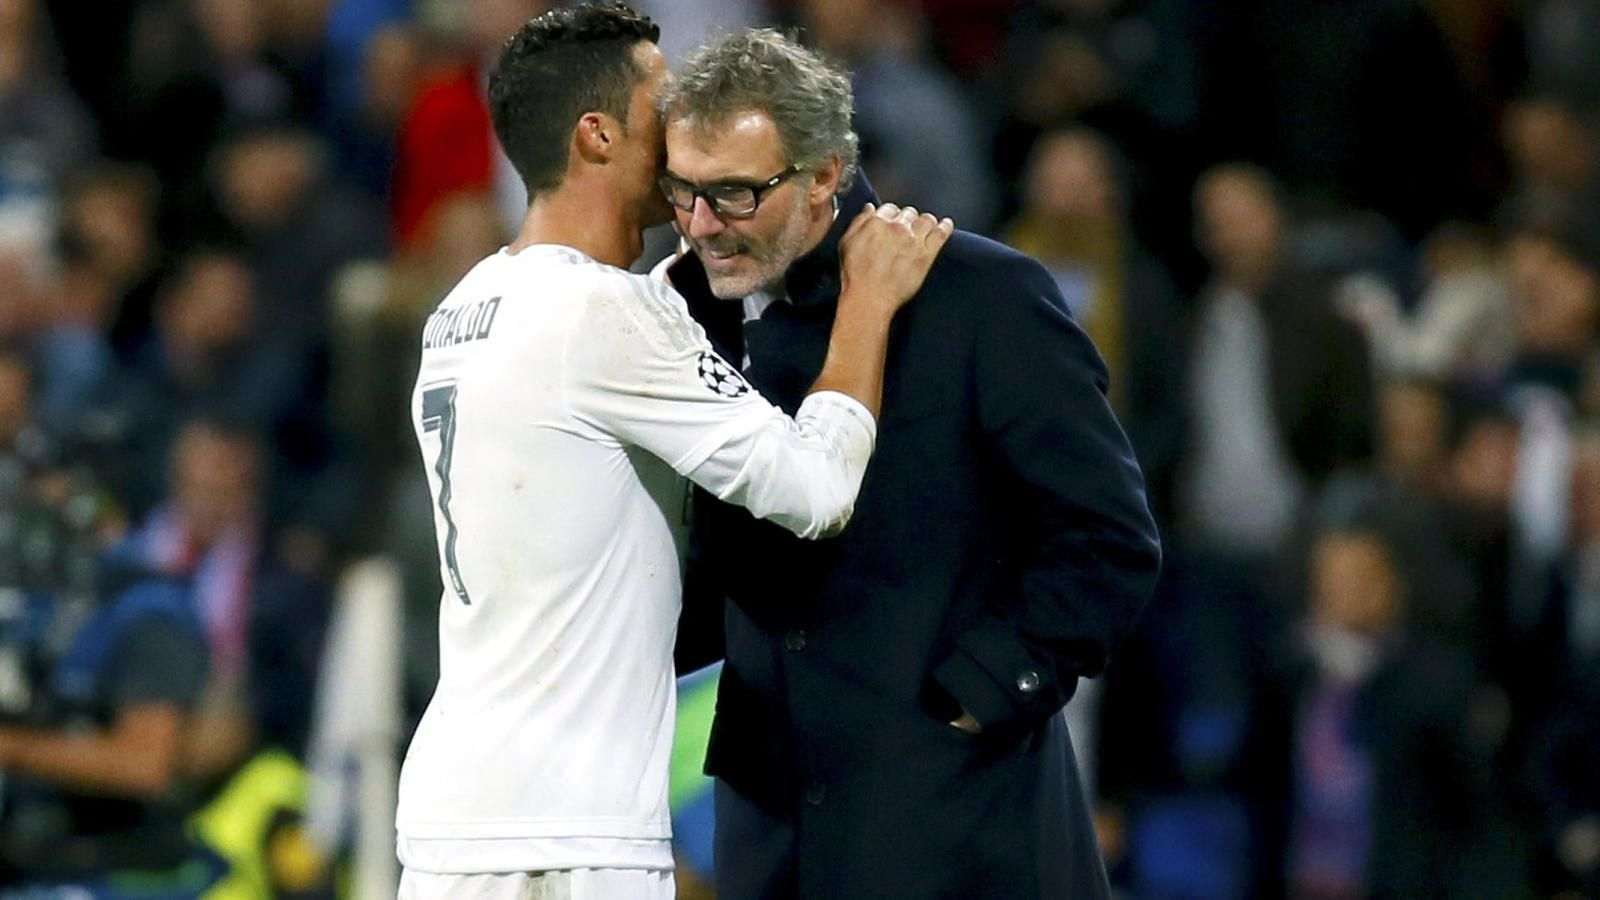 Nova reunió entre Cristiano Ronaldo i el PSG